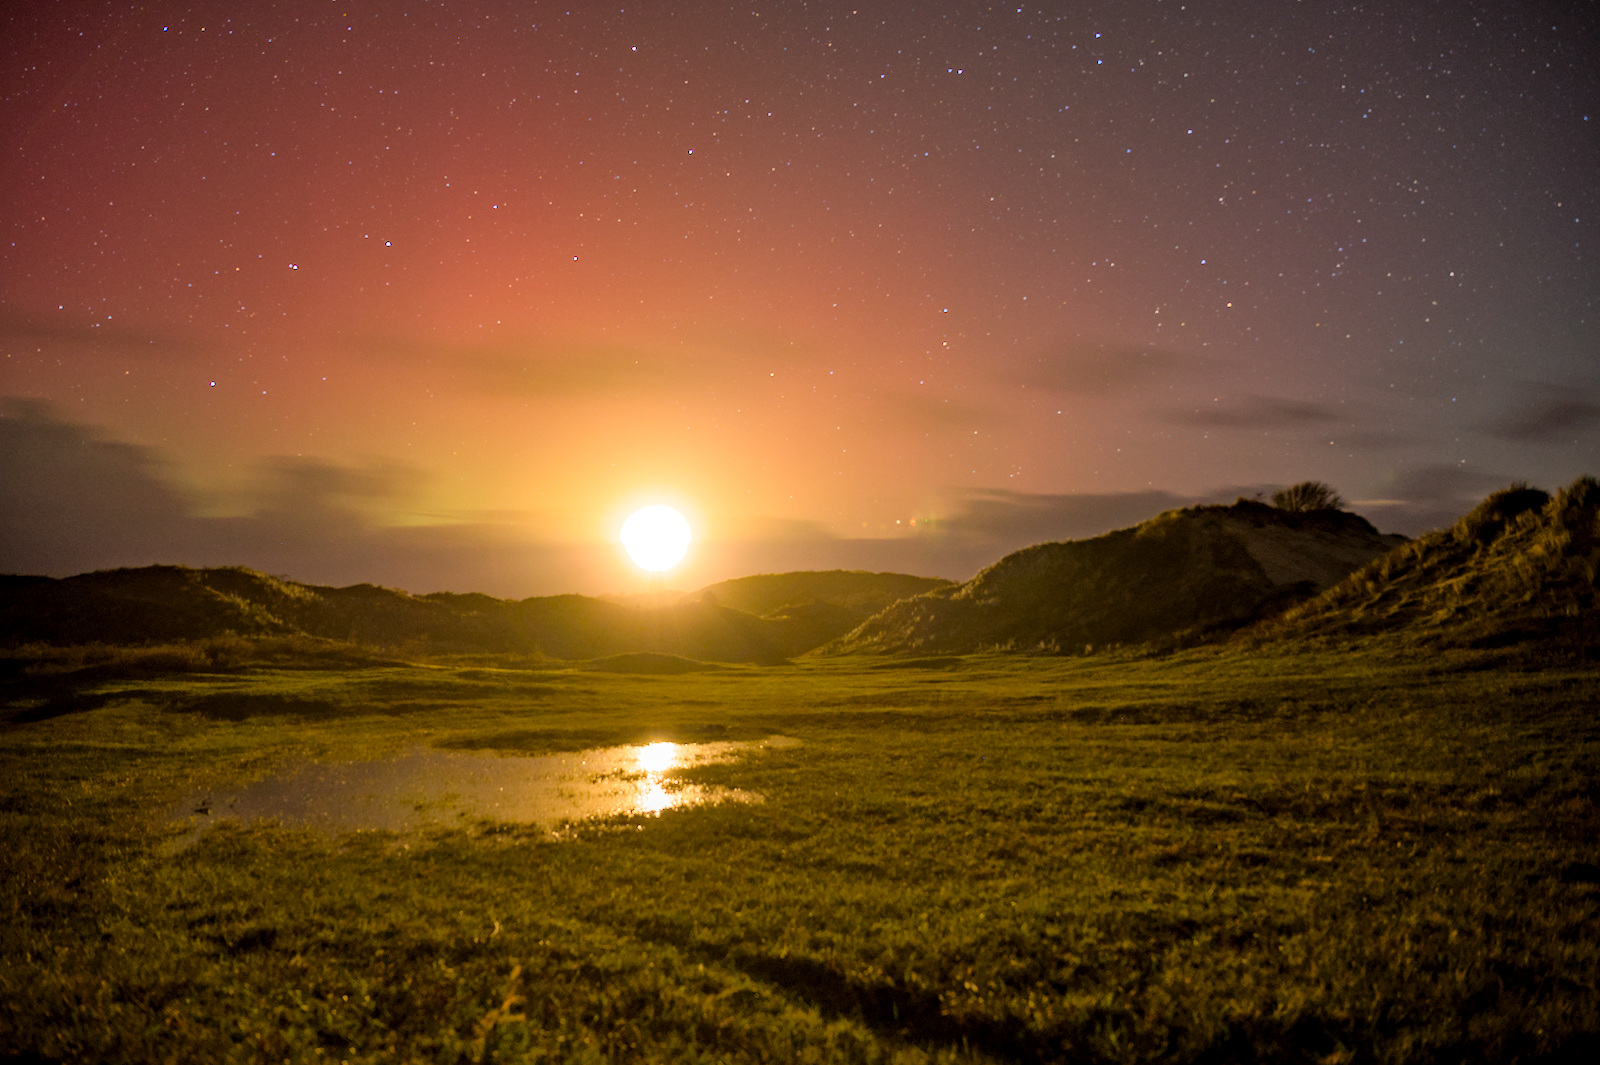 Fel licht boven een duinenrij weerkaatst in een plas in de duinvallei. Een rood-oranje gloed aan de nachtelijke sterrenhemel.